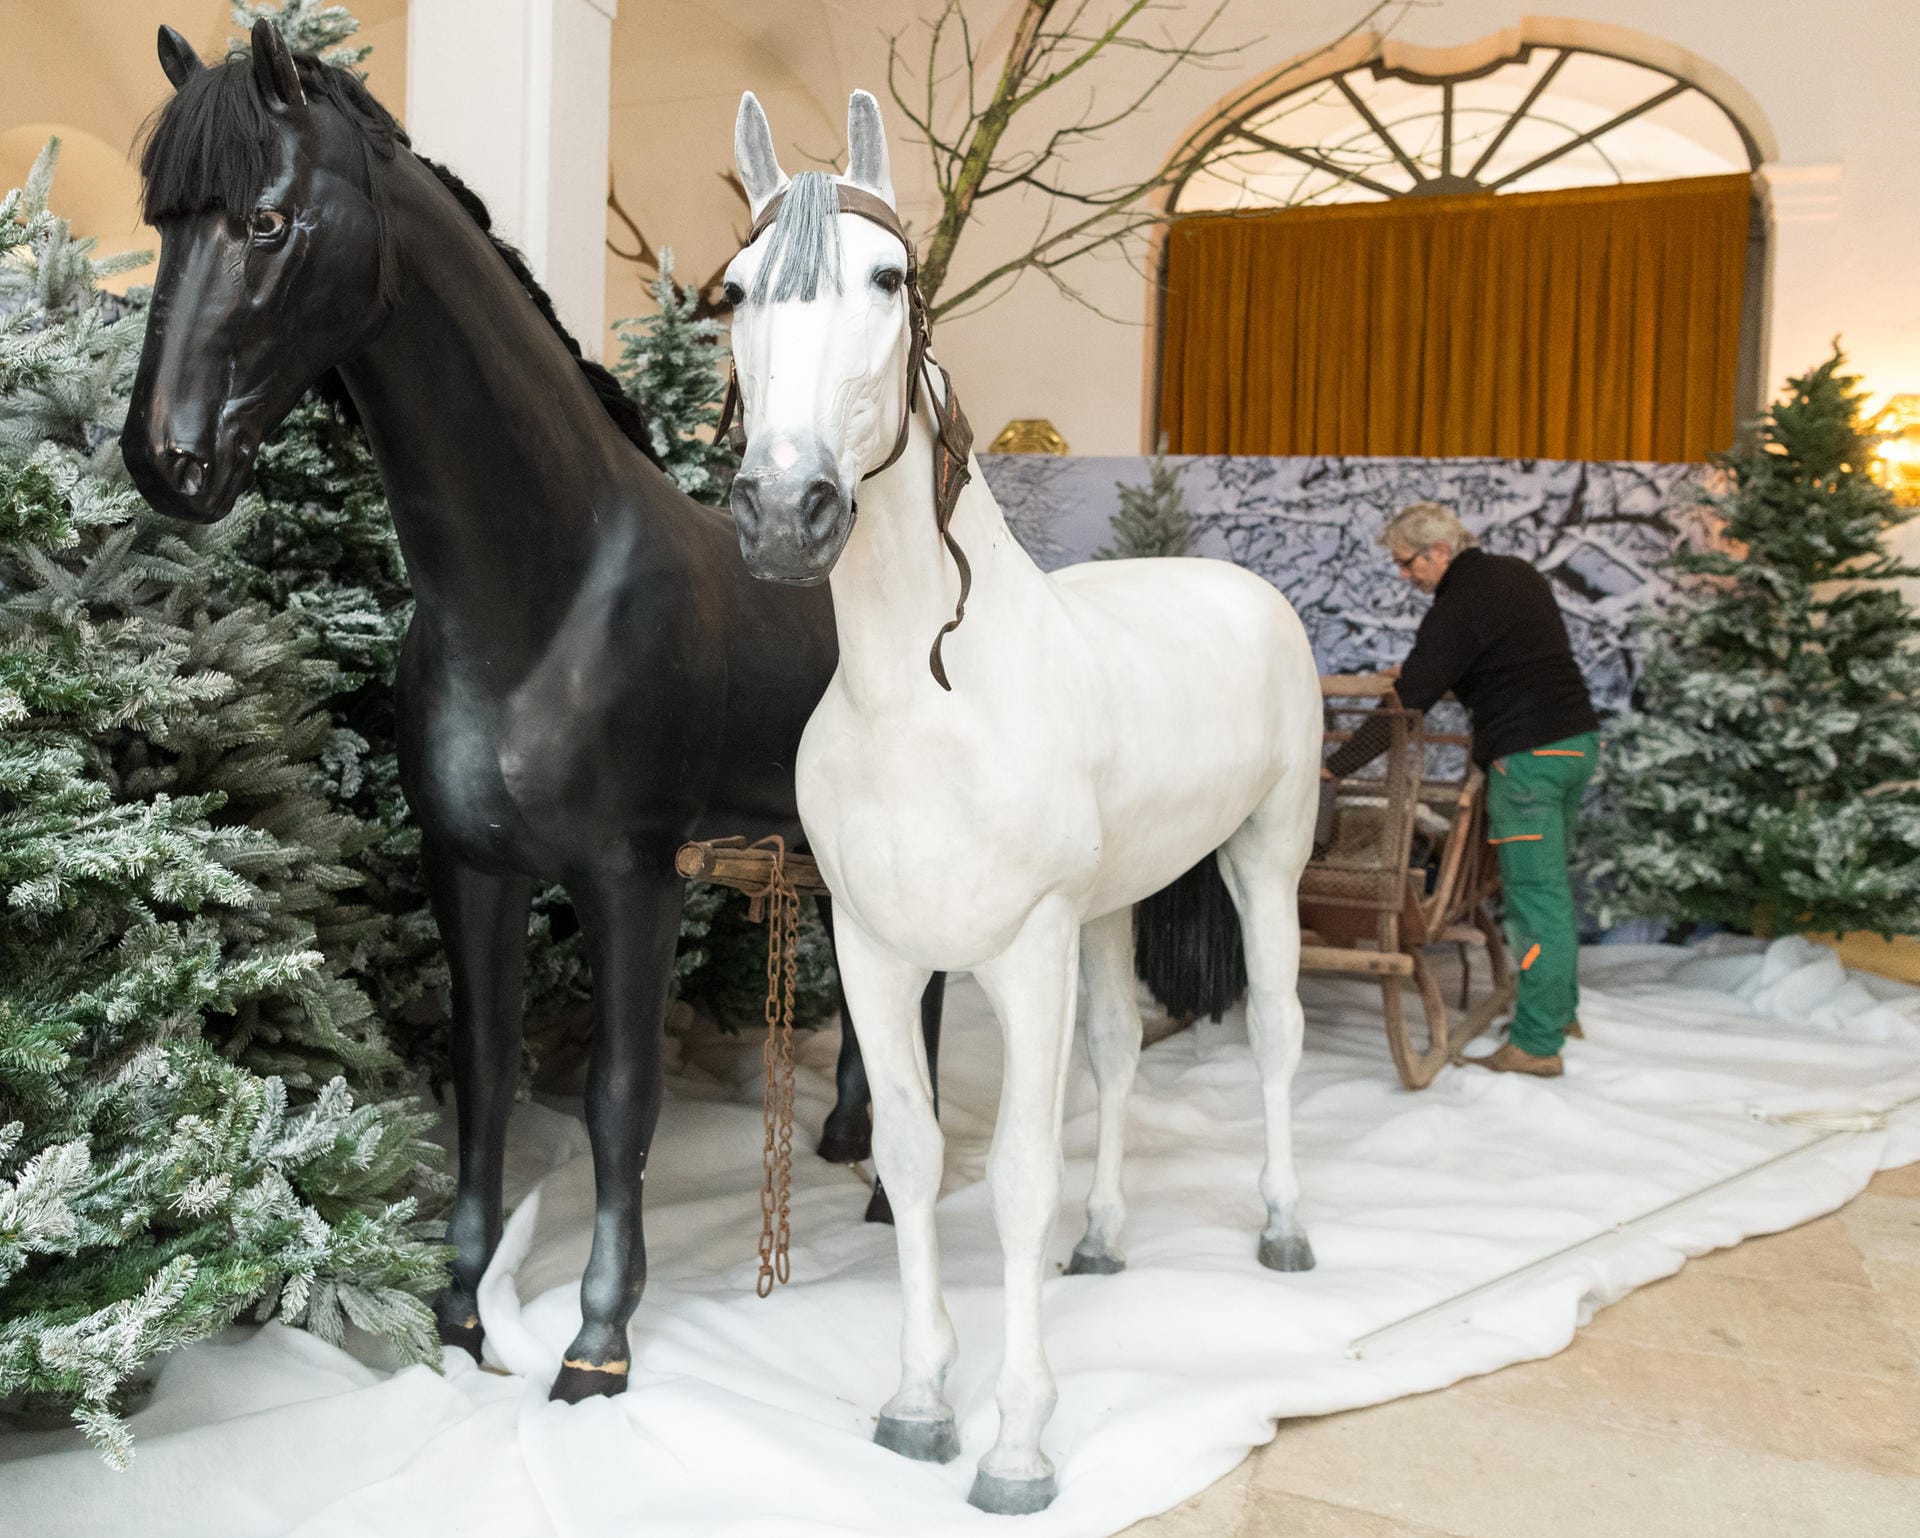 Kunstschnee, Plastiktannen und Pferdeattrappen: In den Ausstellungsräumen von Schloss Moritzburg hält der Winter Einzug.